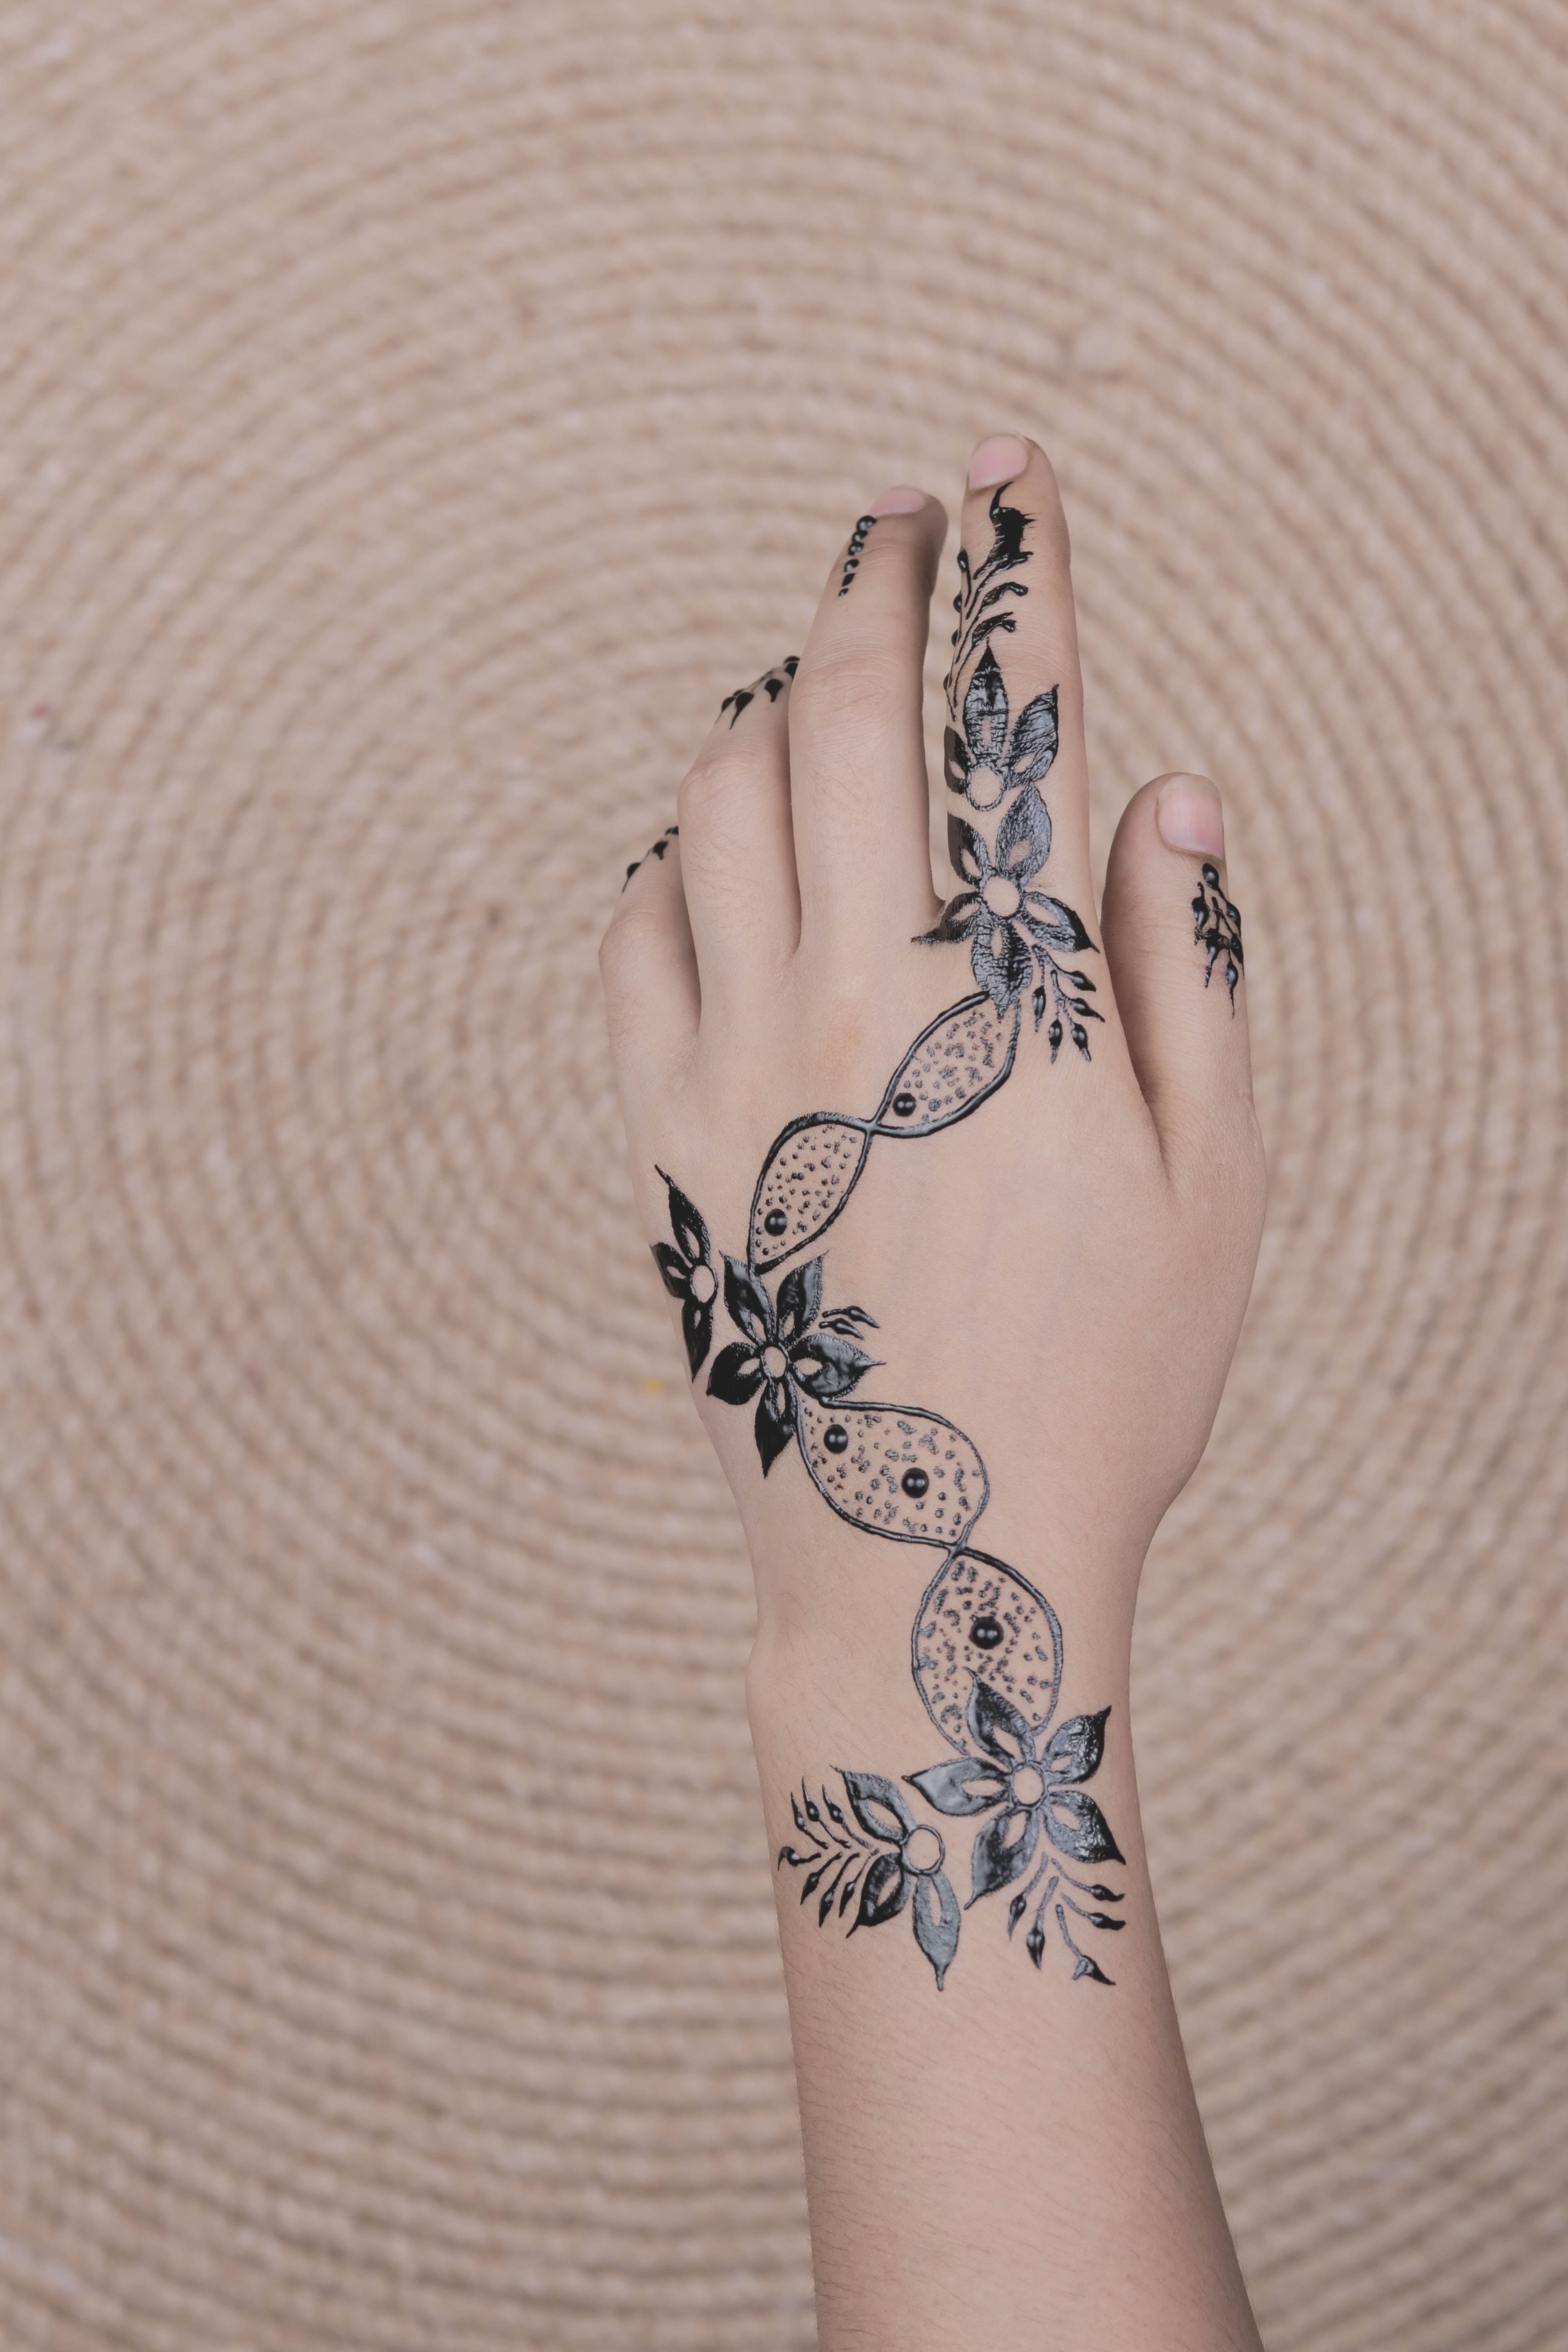 Modern Henna Tattoos for the Bride | Arabia Weddings